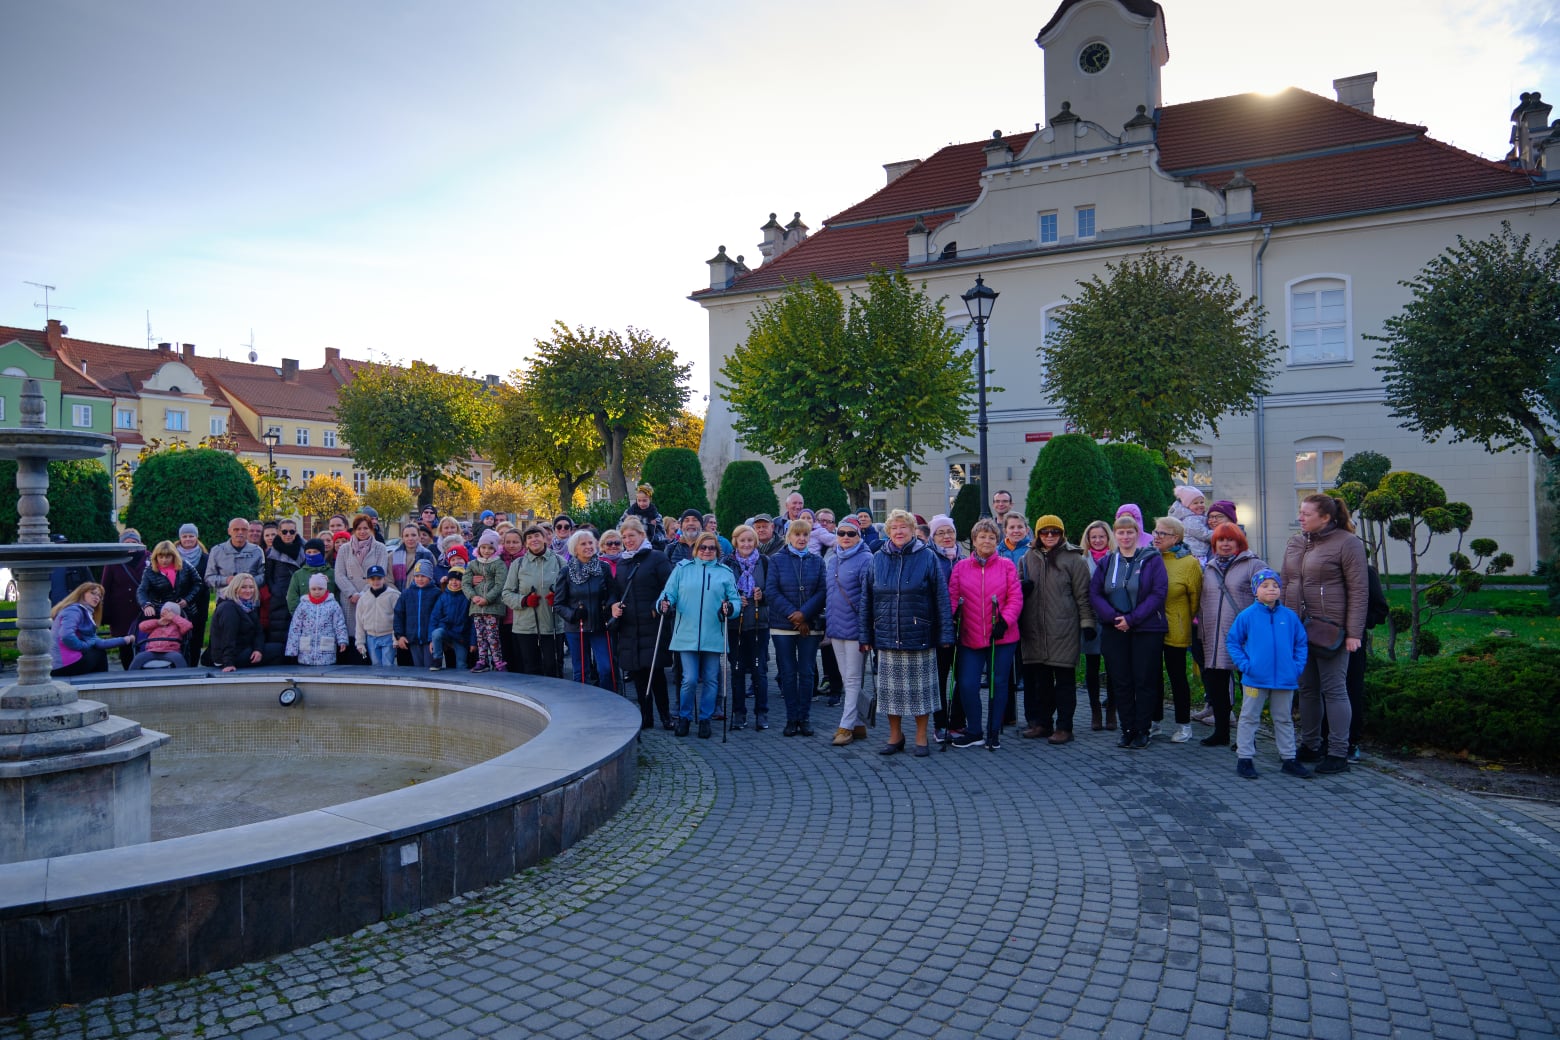 Rynek miasta Działdowo, z lewej fontanna, za nią grupa ludzi pozująca do grupowego zdjęcia, w tle ratusz miasta i kamienice 